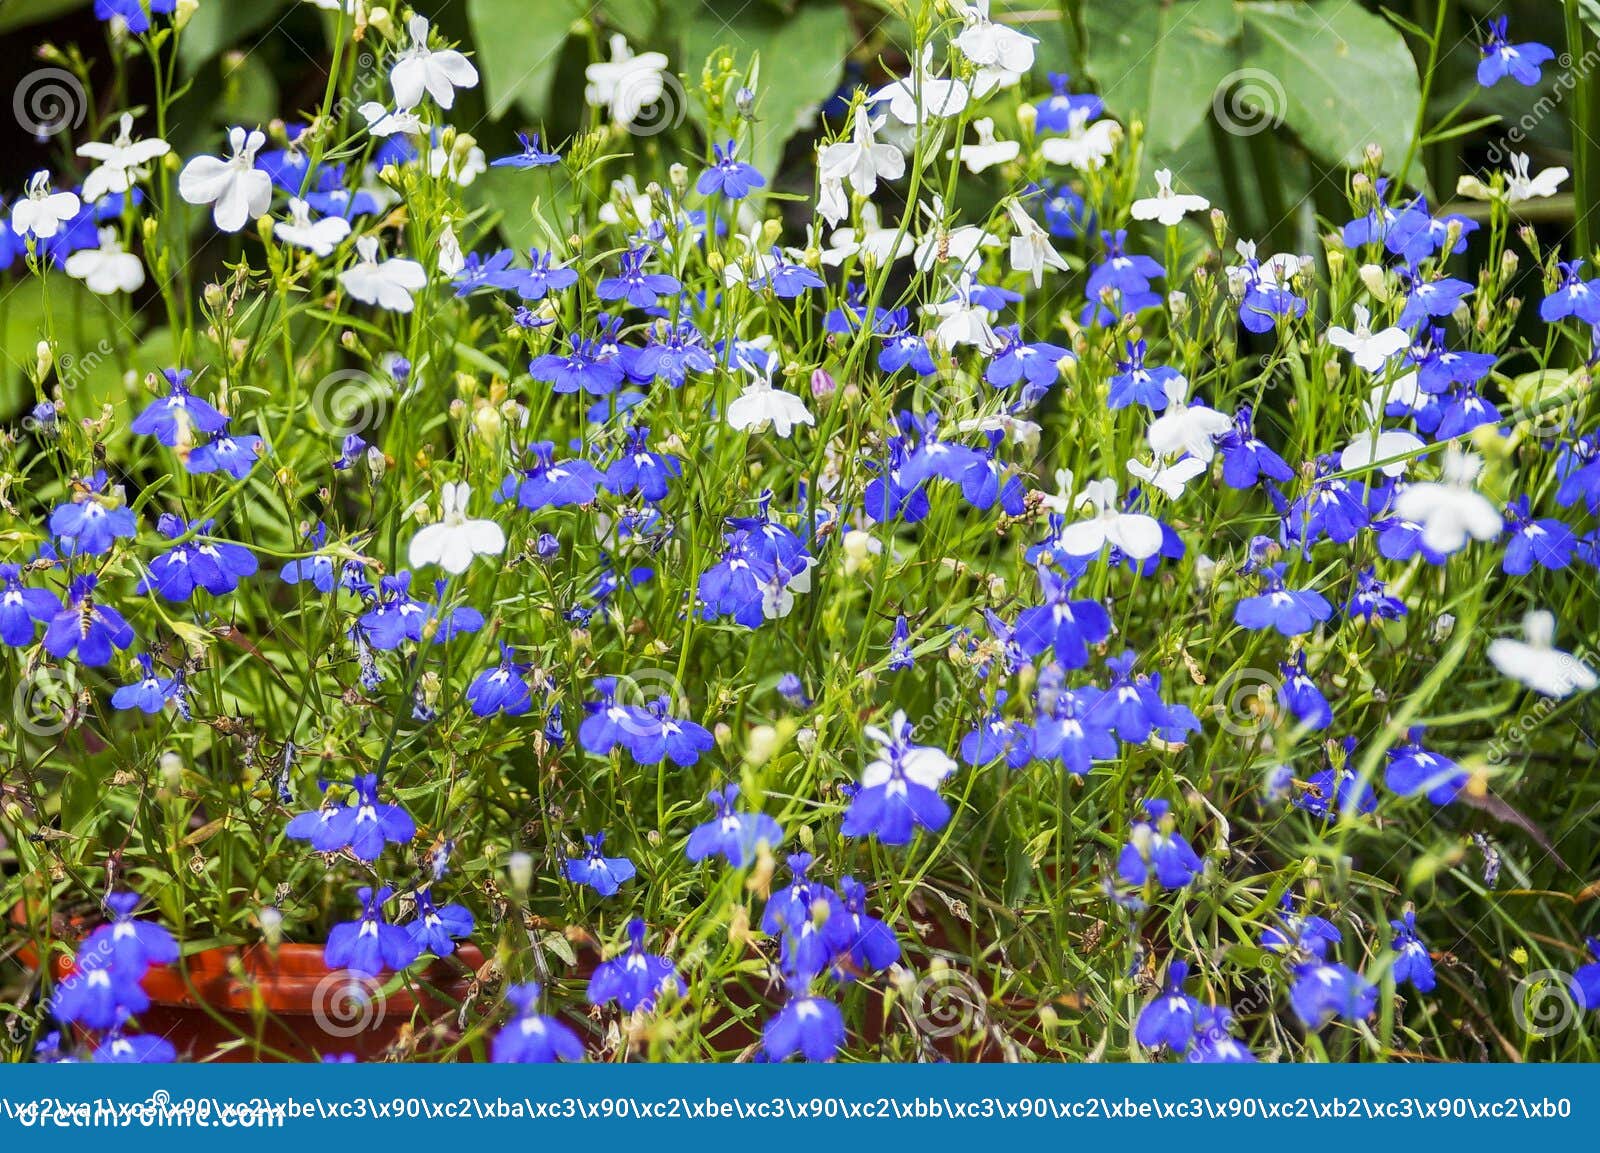 Kleurrijke Lobelia-bloem in De De Zomertuin Stock Foto - Image of blauw ...